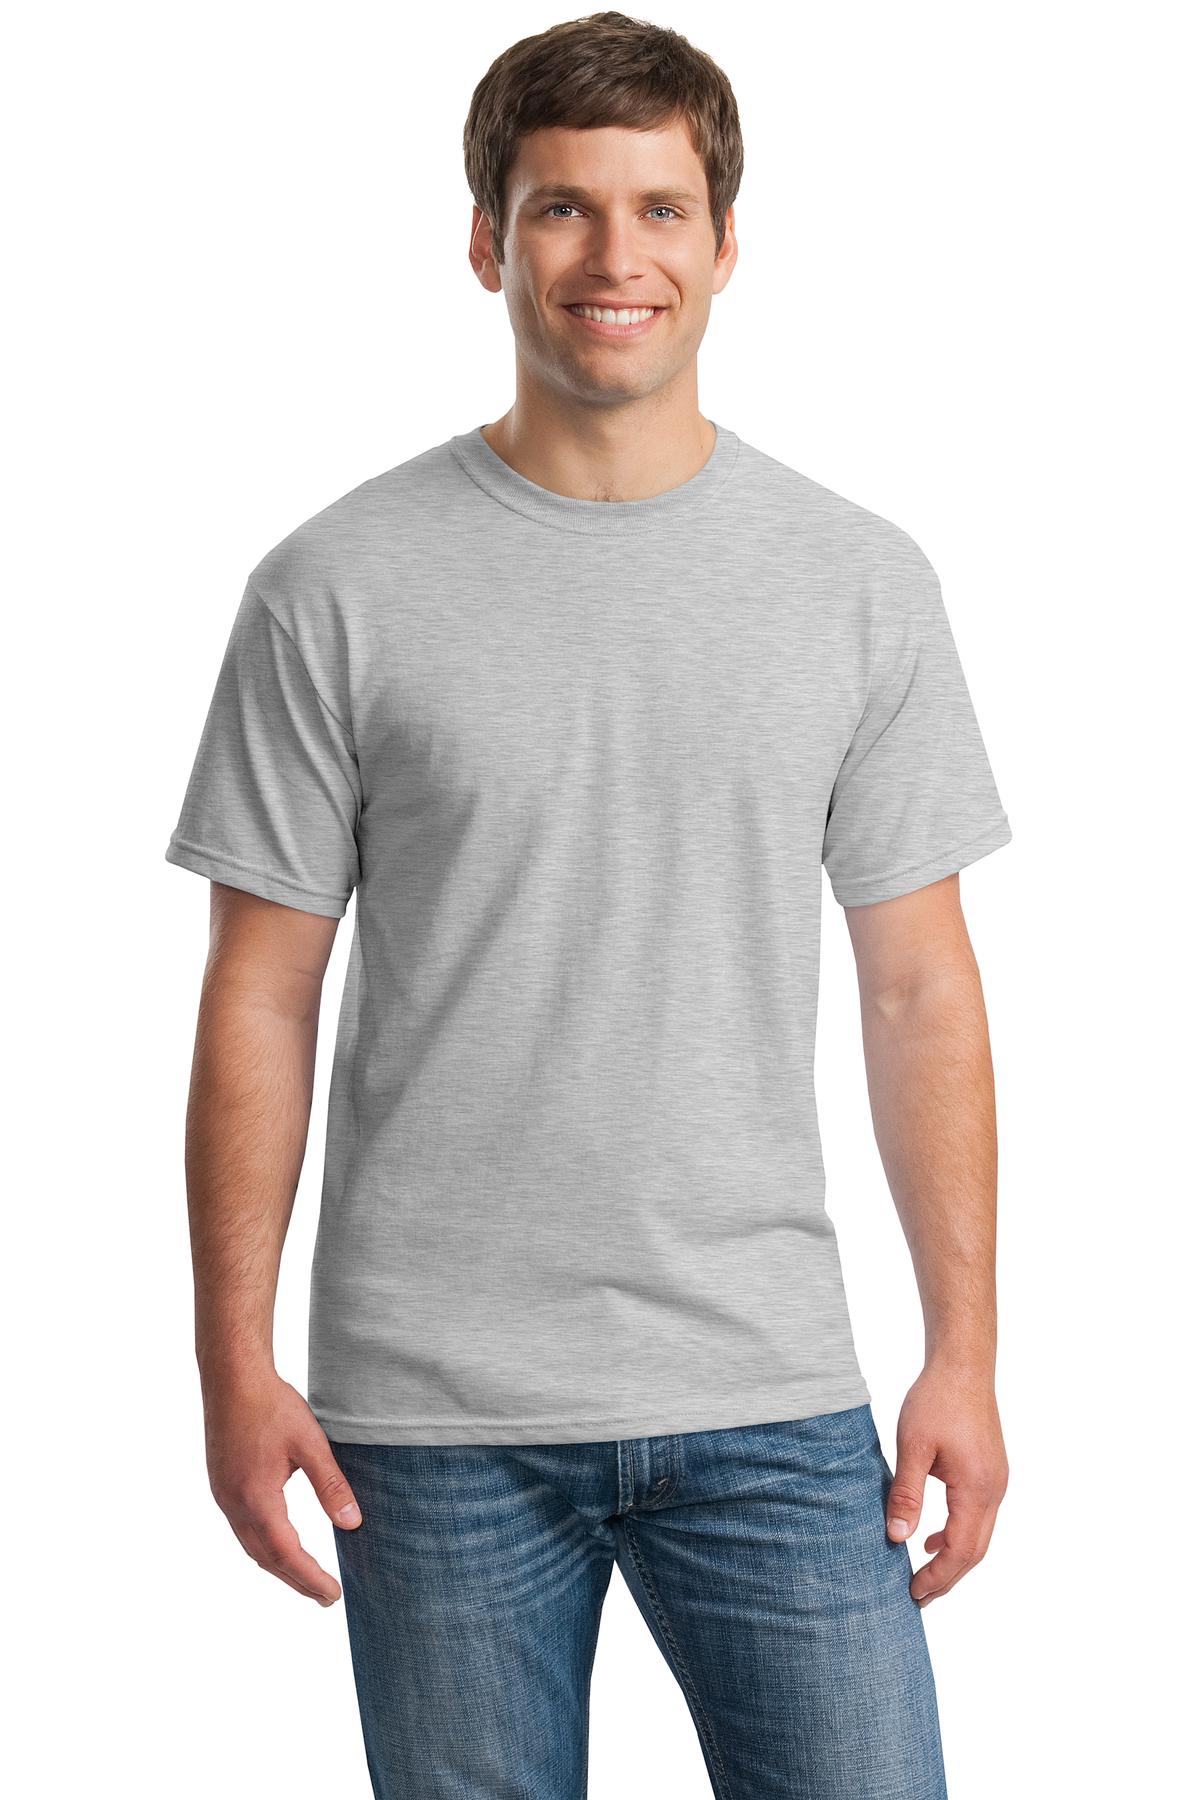 6 NEW Wholesale Gildan 5000 100% Heavy Cotton White Adult T-Shirts S M L XL 